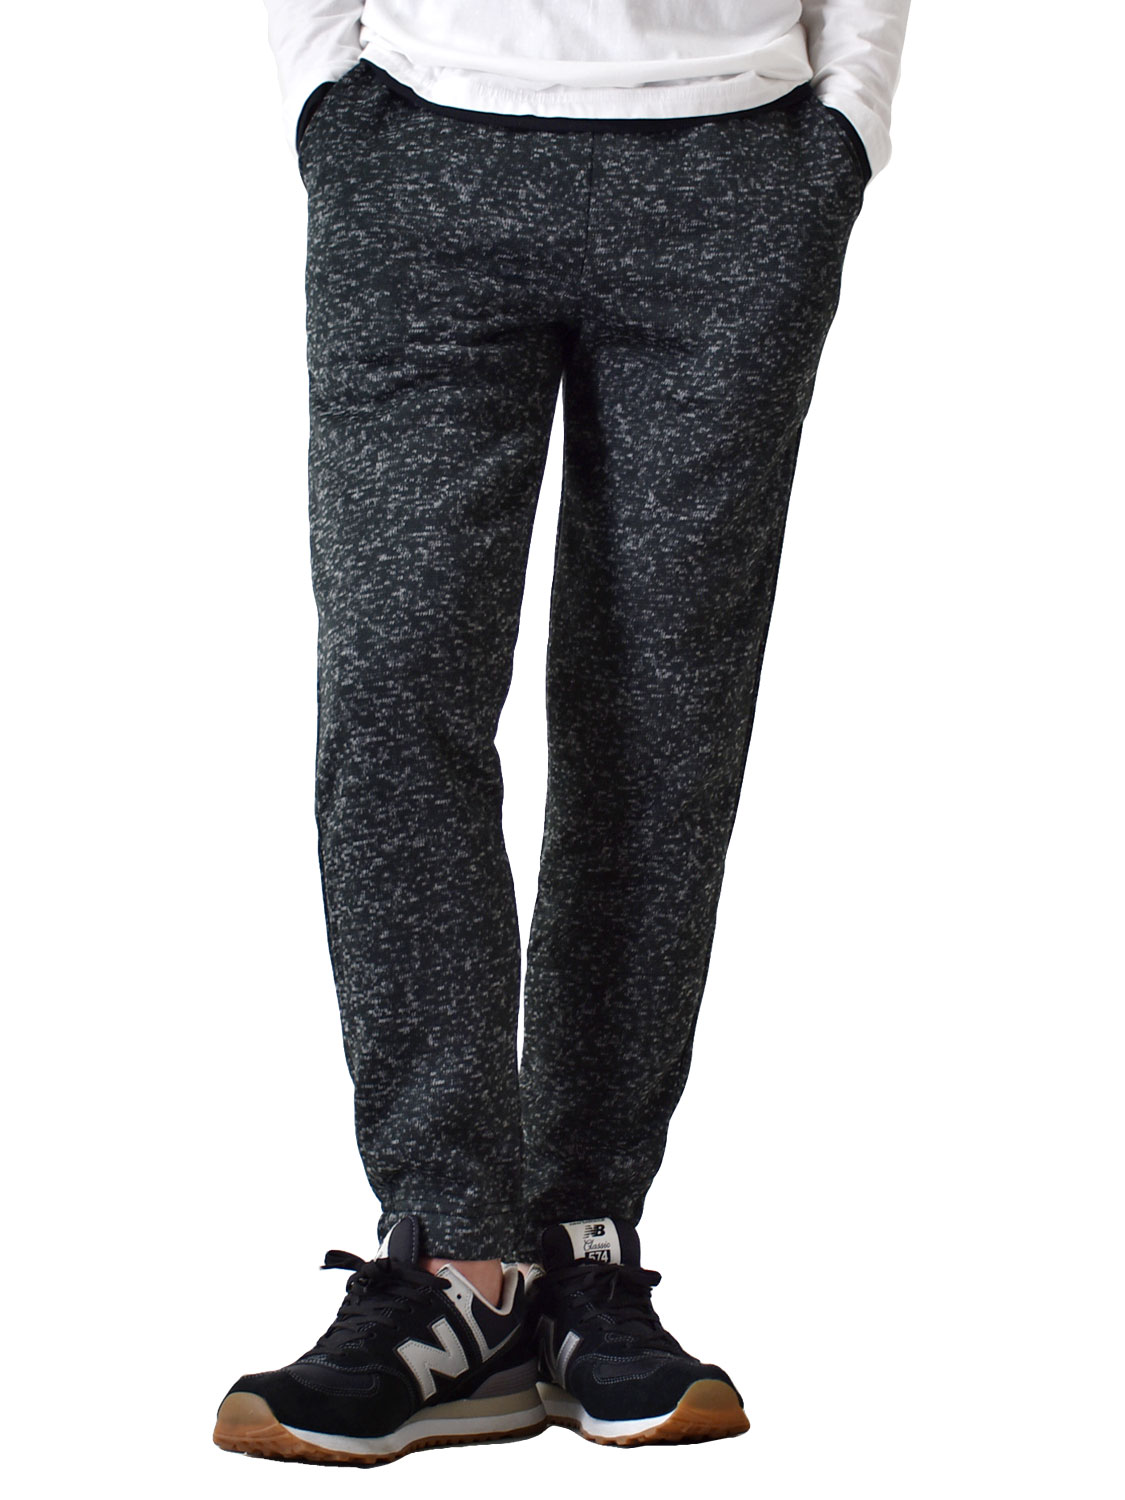 スウェットパンツ メンズ パンツ ストレッチパンツ 裏起毛 暖かい ジョガーパンツ ストレッチ 防寒 伸びる セール 送料無料 通販YC